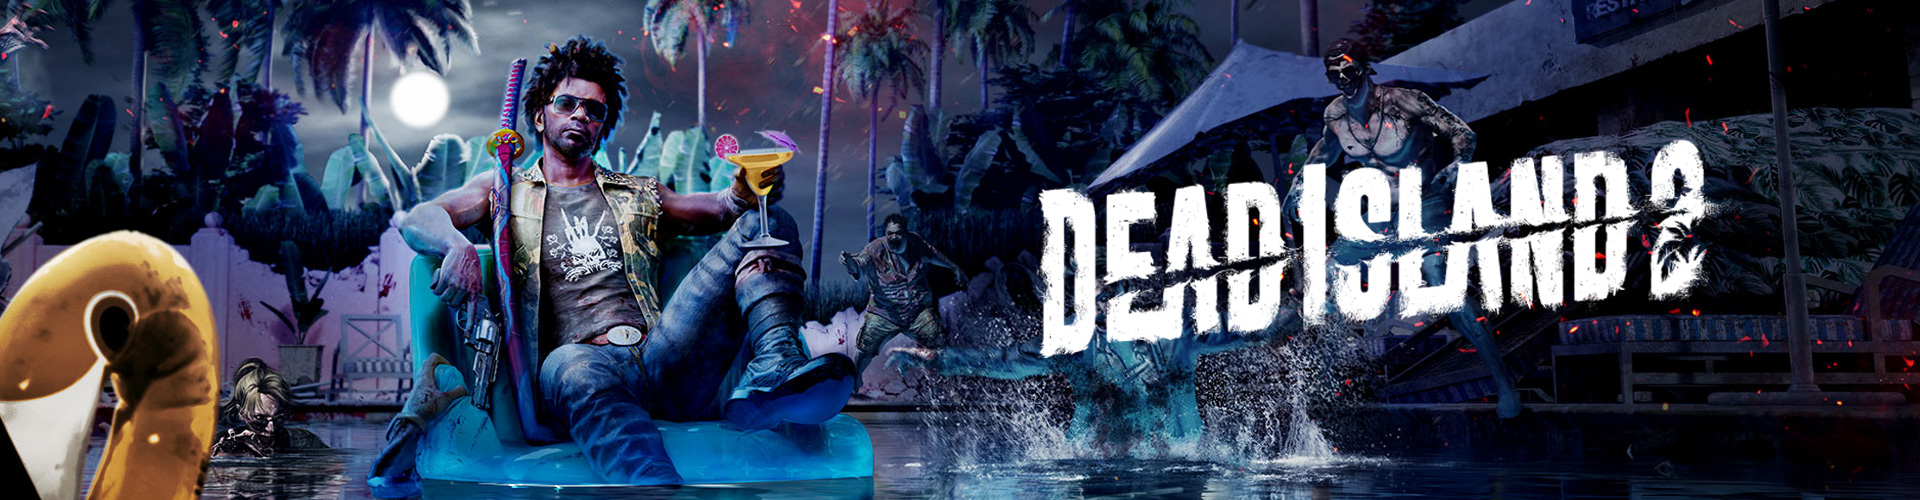 Dead Island 2: Ein Multiplayer-Horrorspiel gegen Zombies